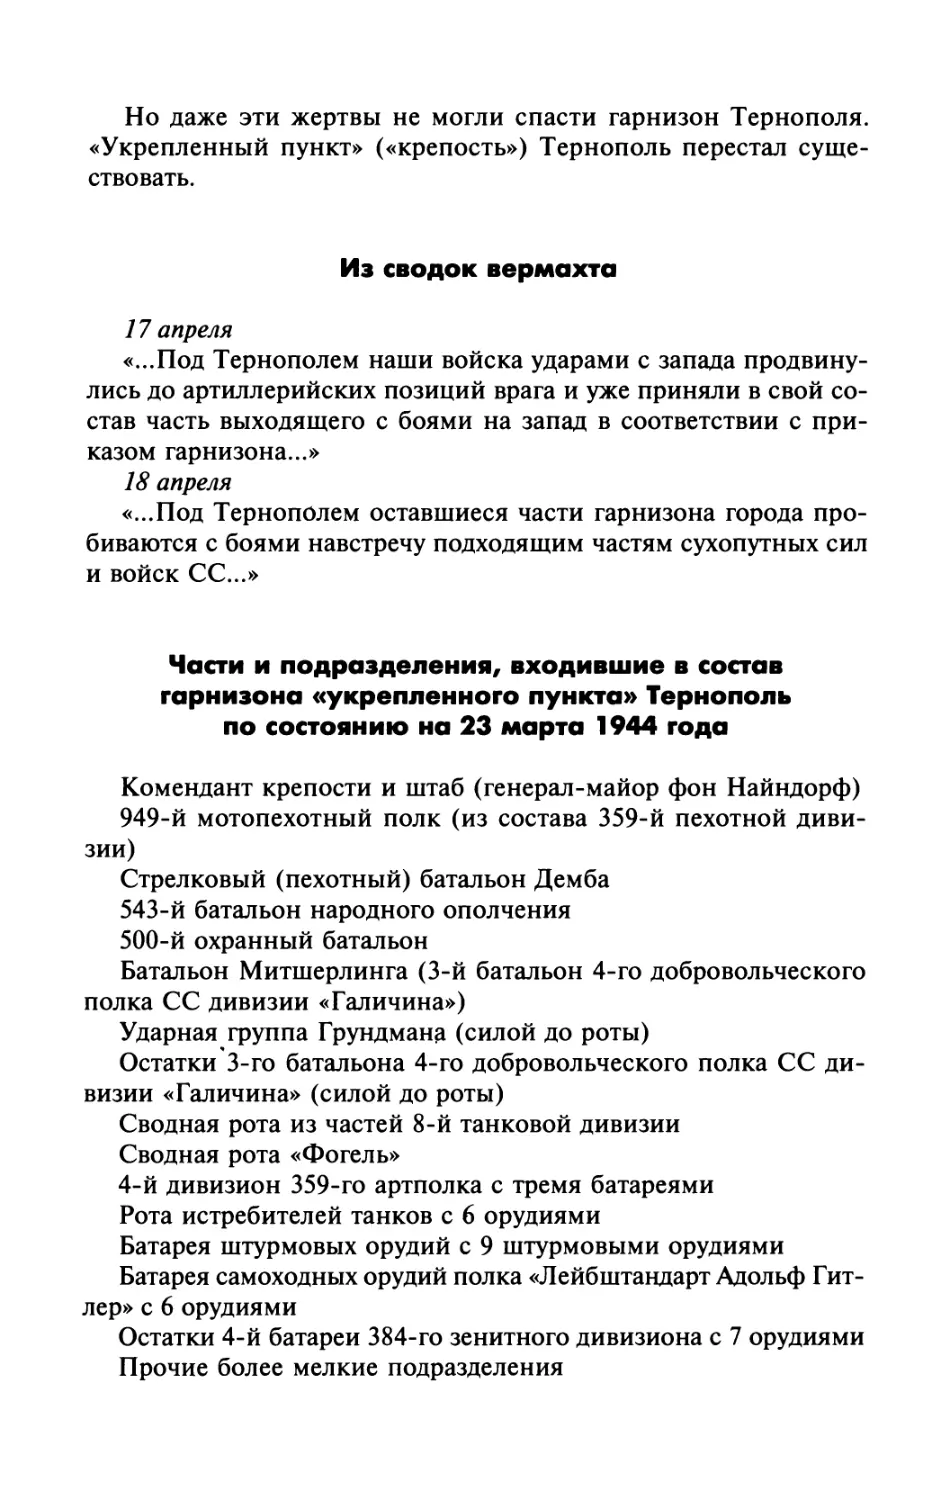 Из сводок вермахта
Части и подразделения, входившие в состав гарнизона «укрепленного пункта» Тернополь по состоянию на 23 марта 1944 года